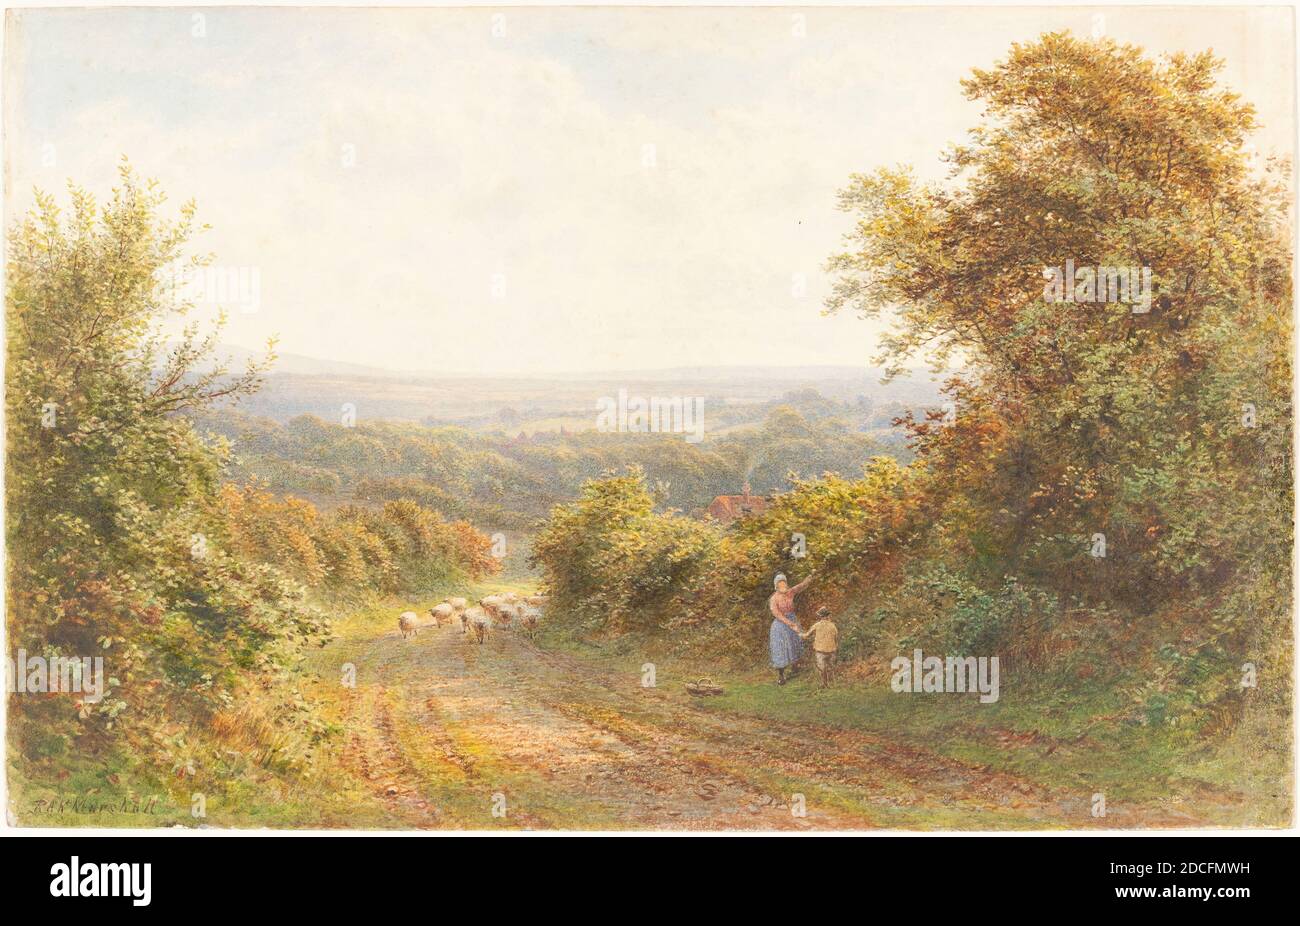 Roberto Angelo Kittermaster Marshall, (artiste), britannique, 1849 - 1902 ou après, Squirrel Lane, près de Magham Down, Sussex, aquarelle sur papier vélin, taille de la vue : 22.5 x 33.9 cm (8 7/8 x 13 3/8 po Banque D'Images